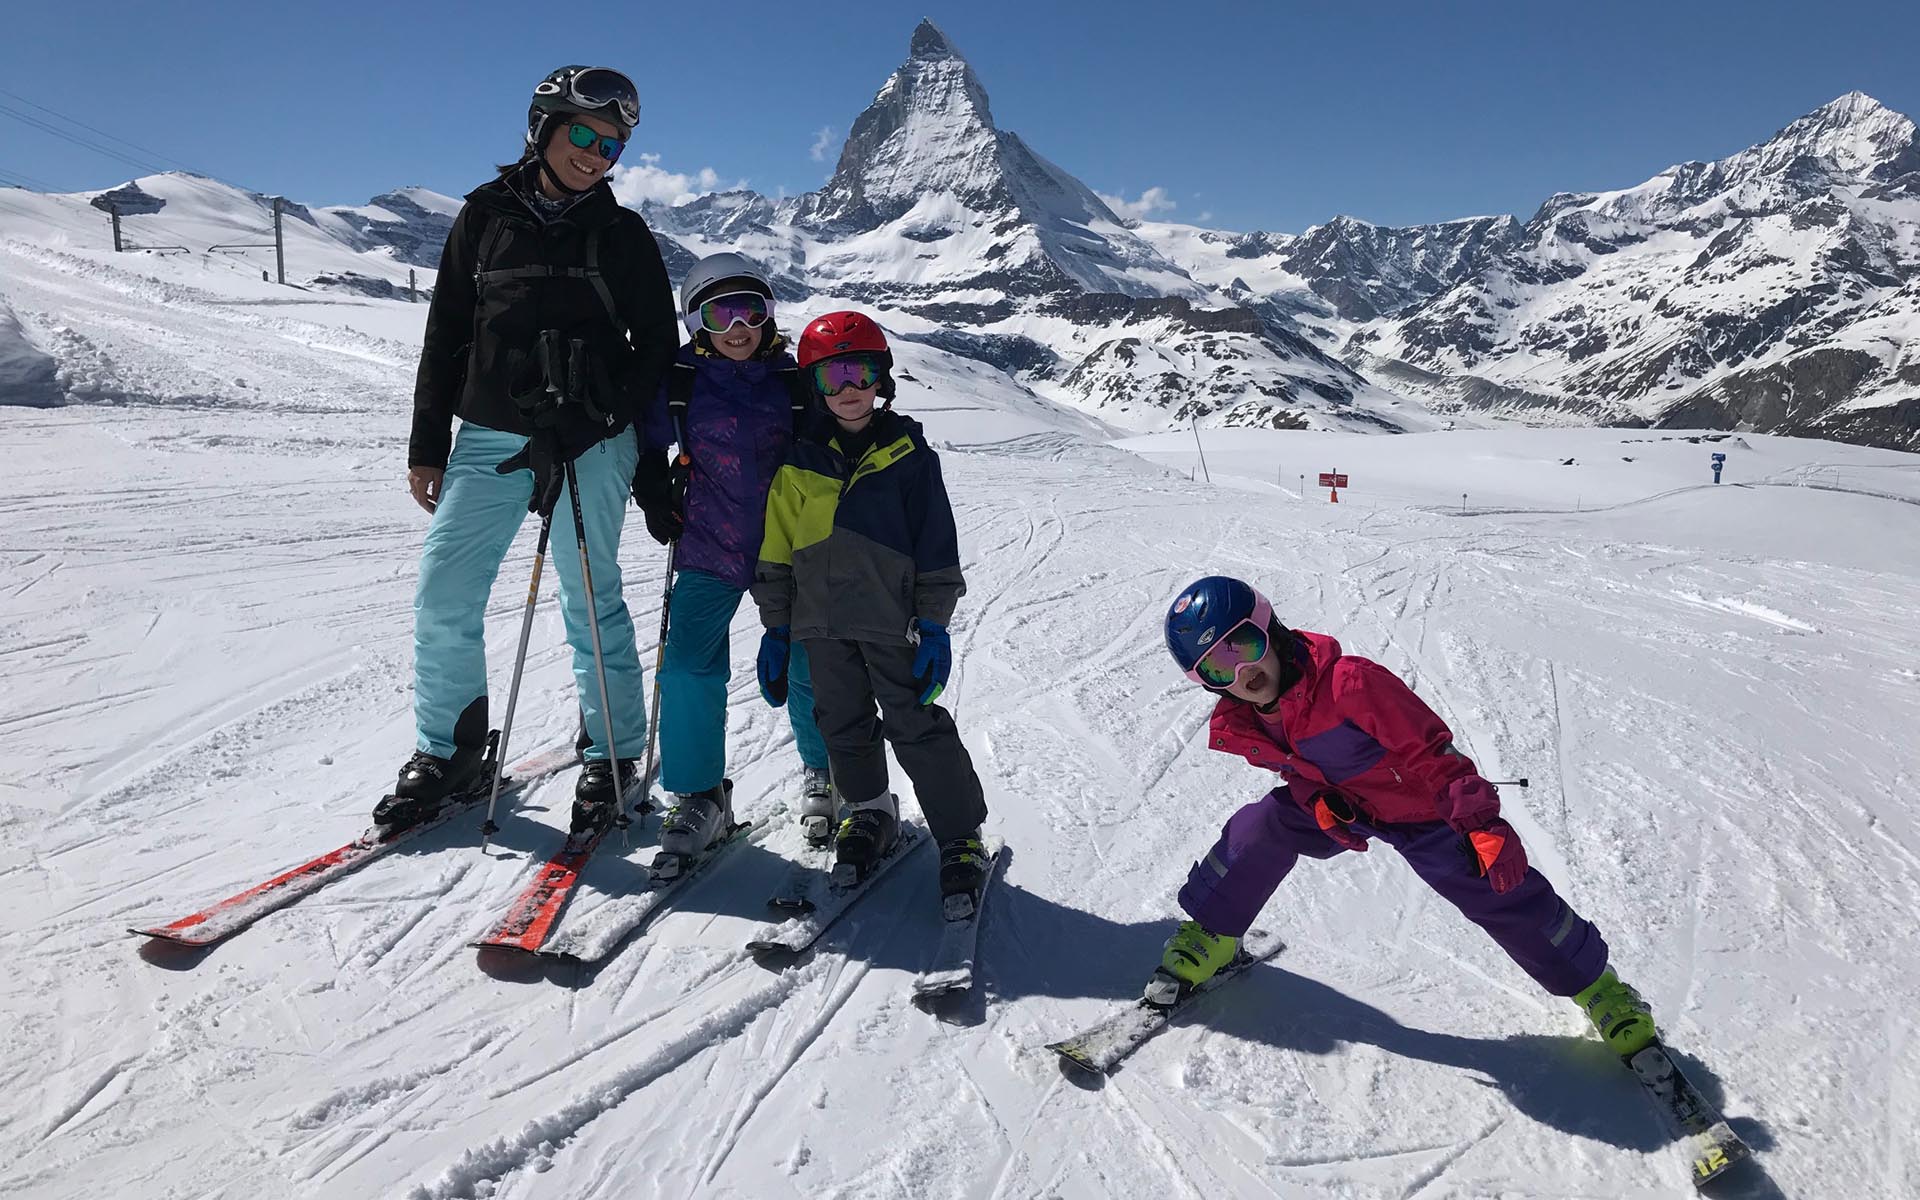 Planning a ski trip with children